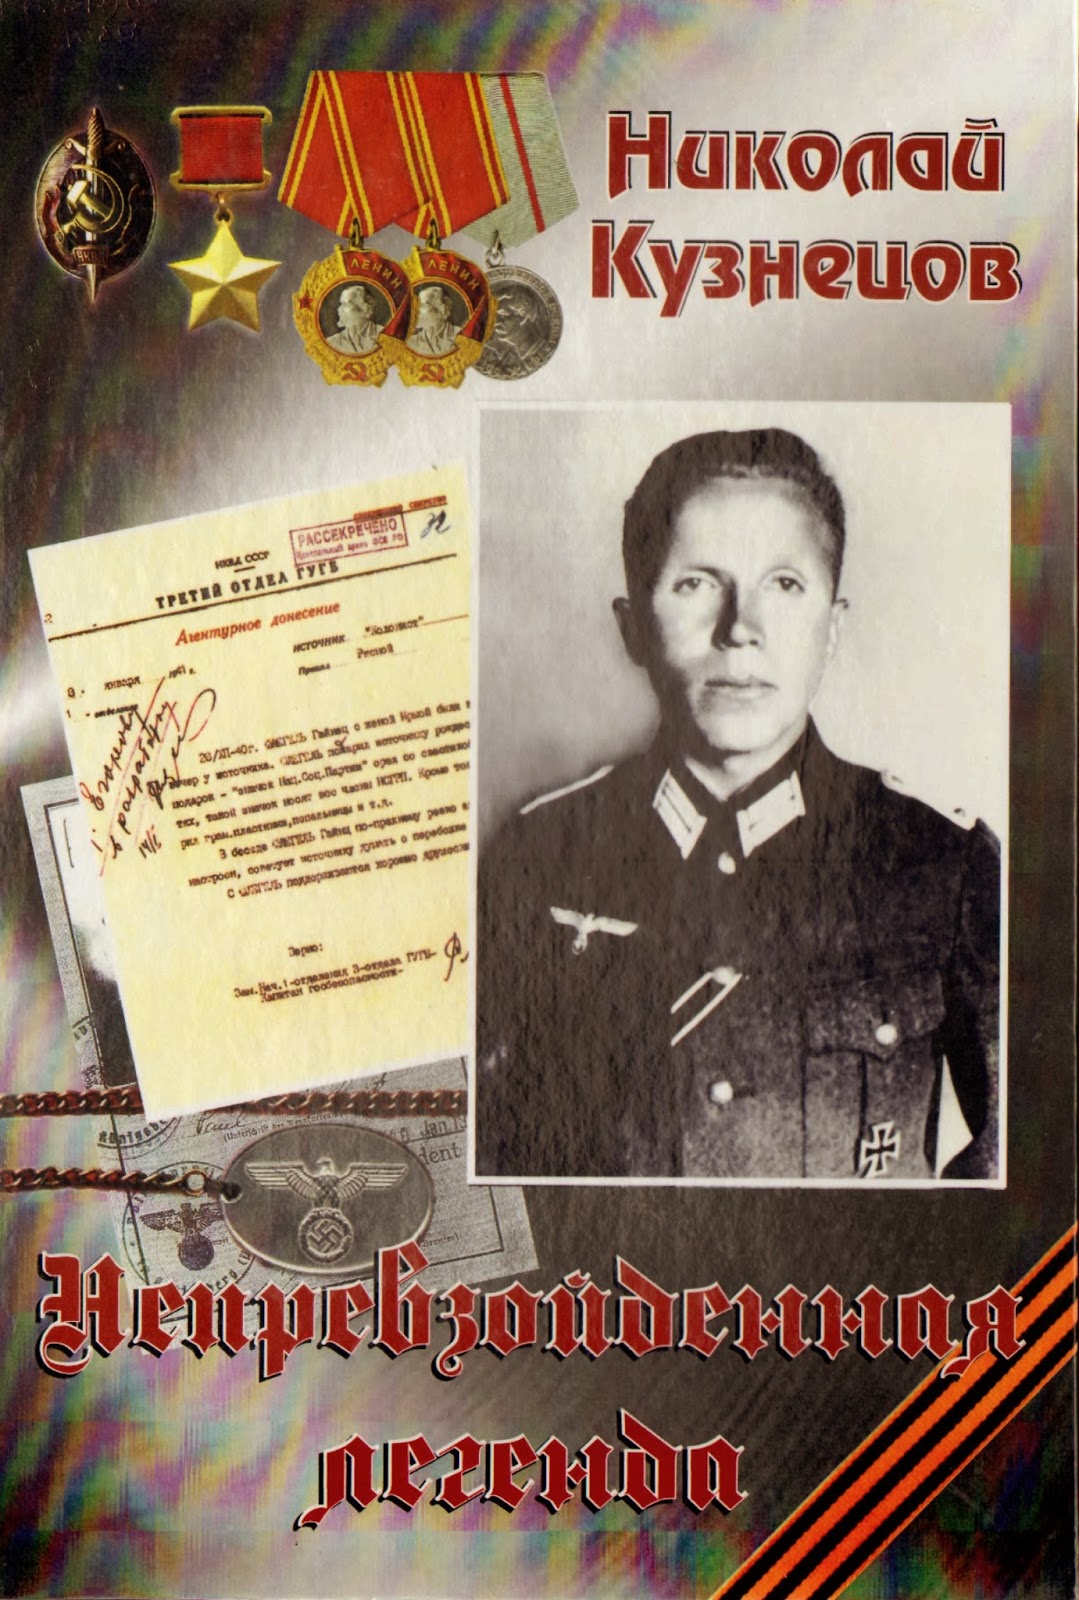 Советский разведчик выдававший себя за немецкого офицера. Кузнецов герой советского Союза разведчик.